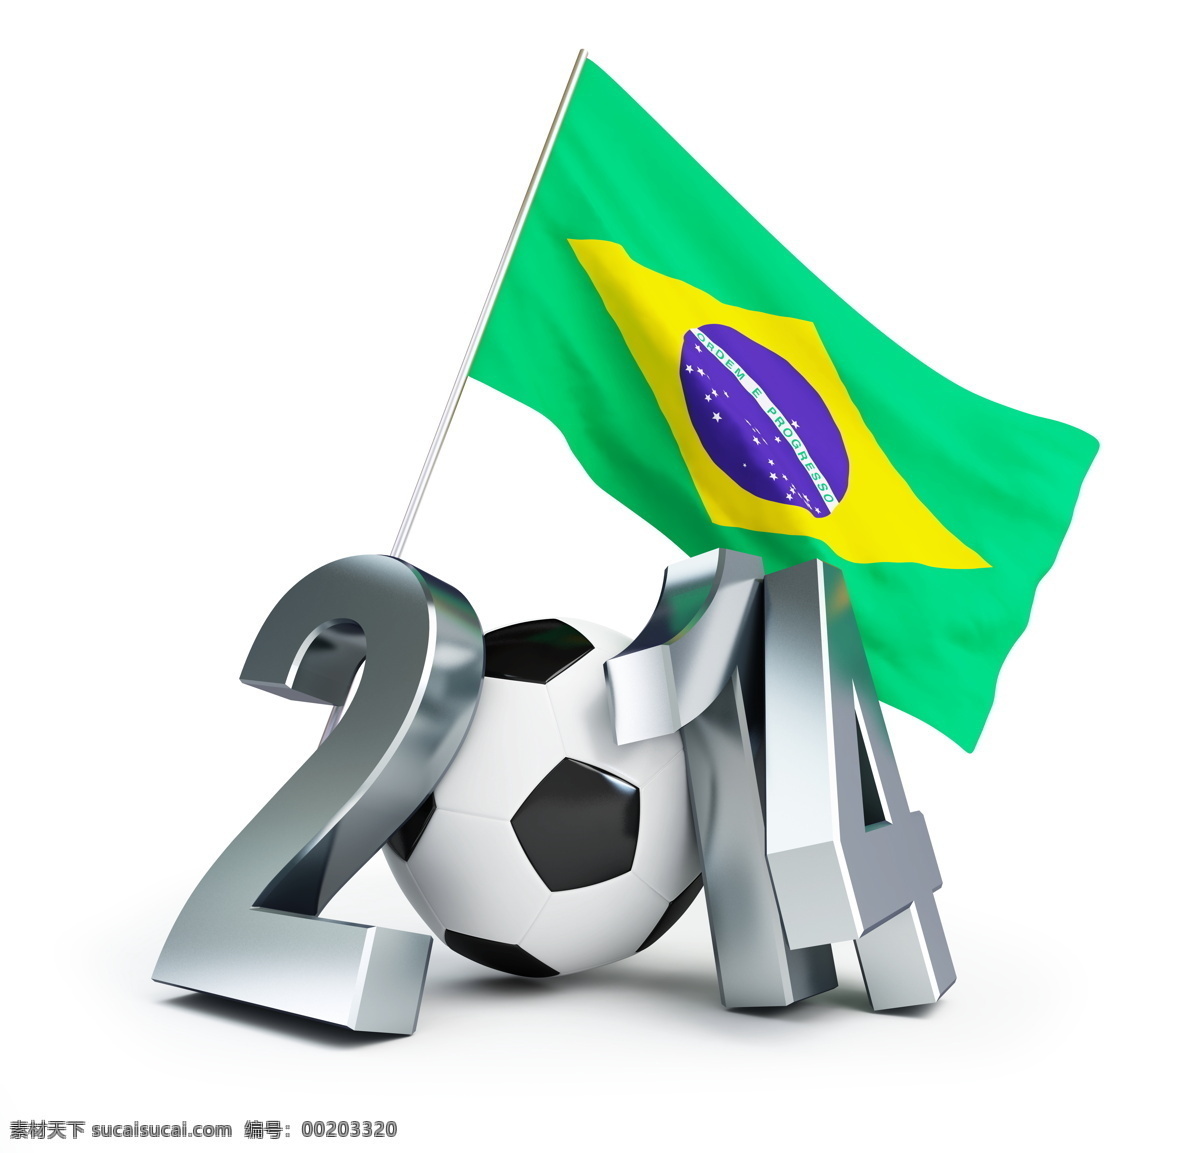 巴西 国旗 足球 巴西国旗 巴西足球 世界杯 足球运动 足球赛事 足球比赛 立体字 金属字 体育运动 生活百科 白色